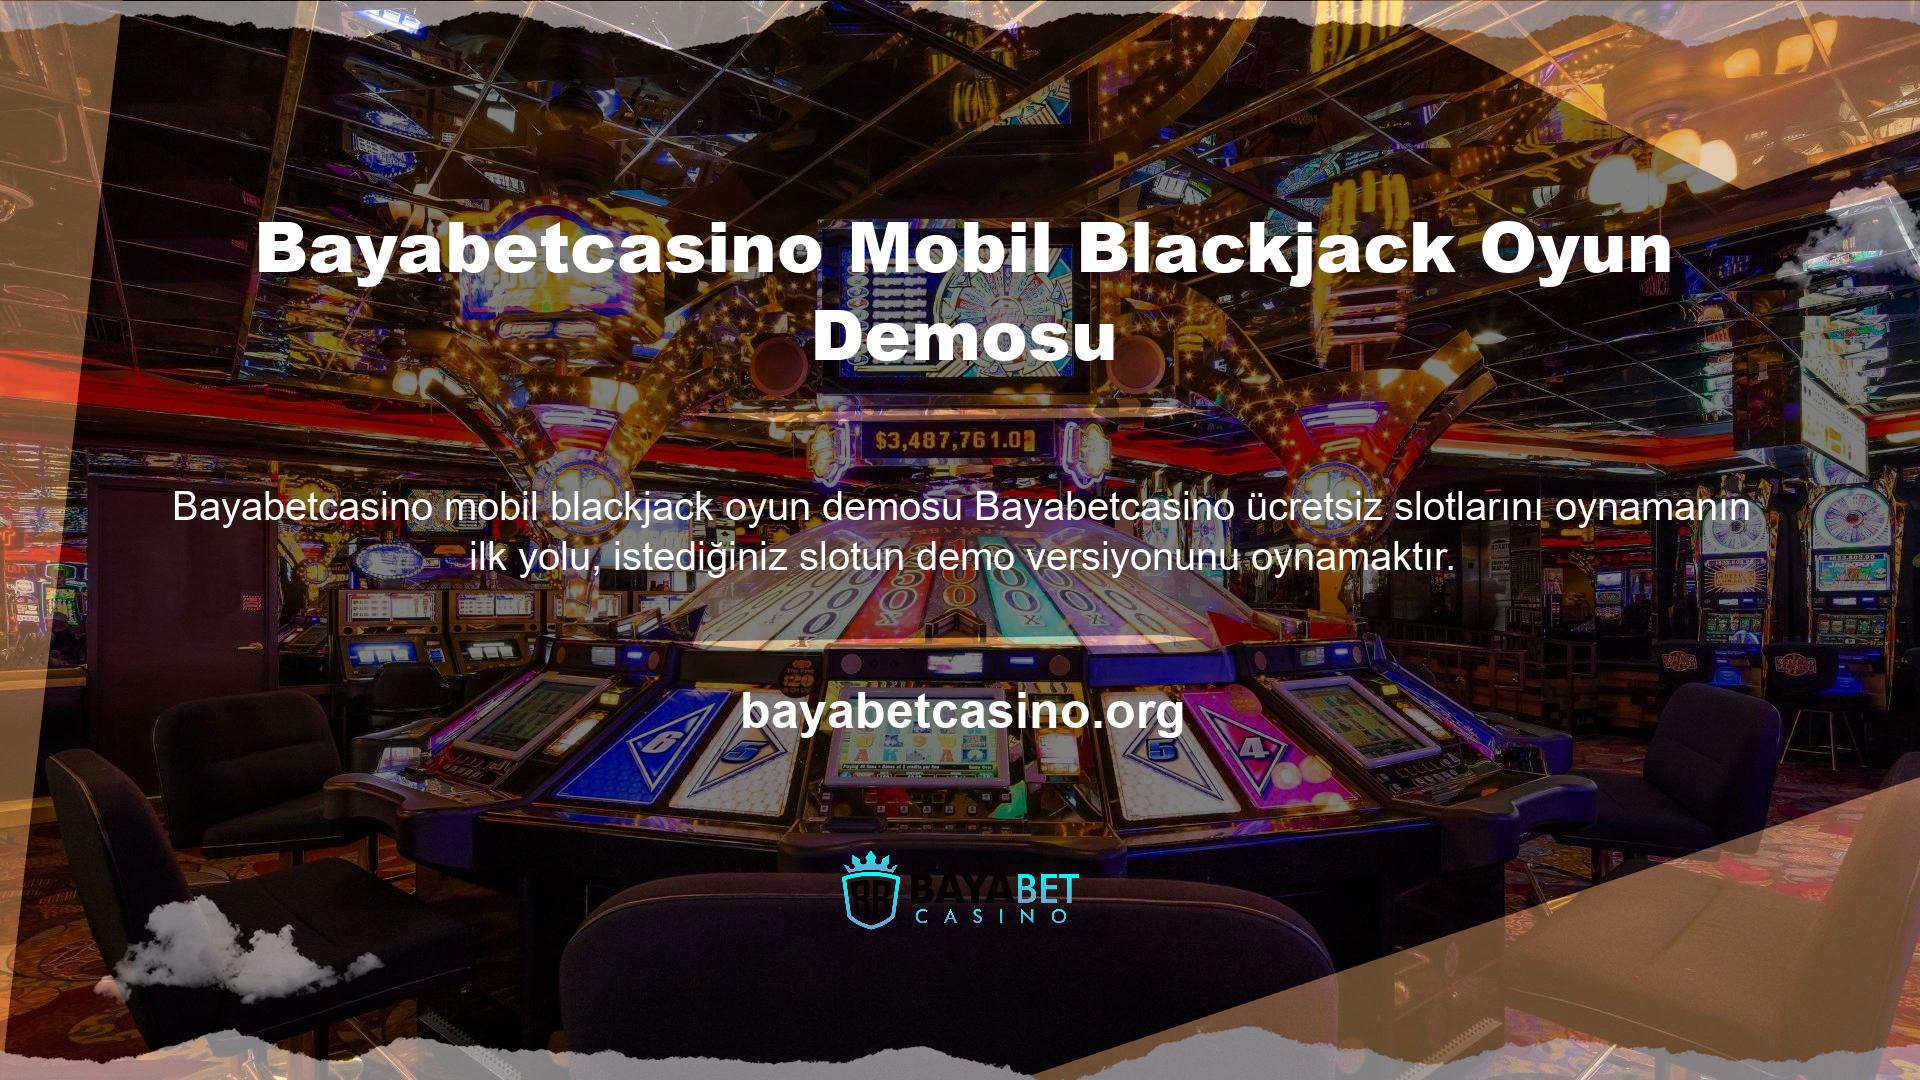 Demoyu başlatmak için “Casino” bölümüne gidin, bir slot oyunu seçin, üzerine gelin ve “Ücretsiz Oyna” düğmesine tıklayın